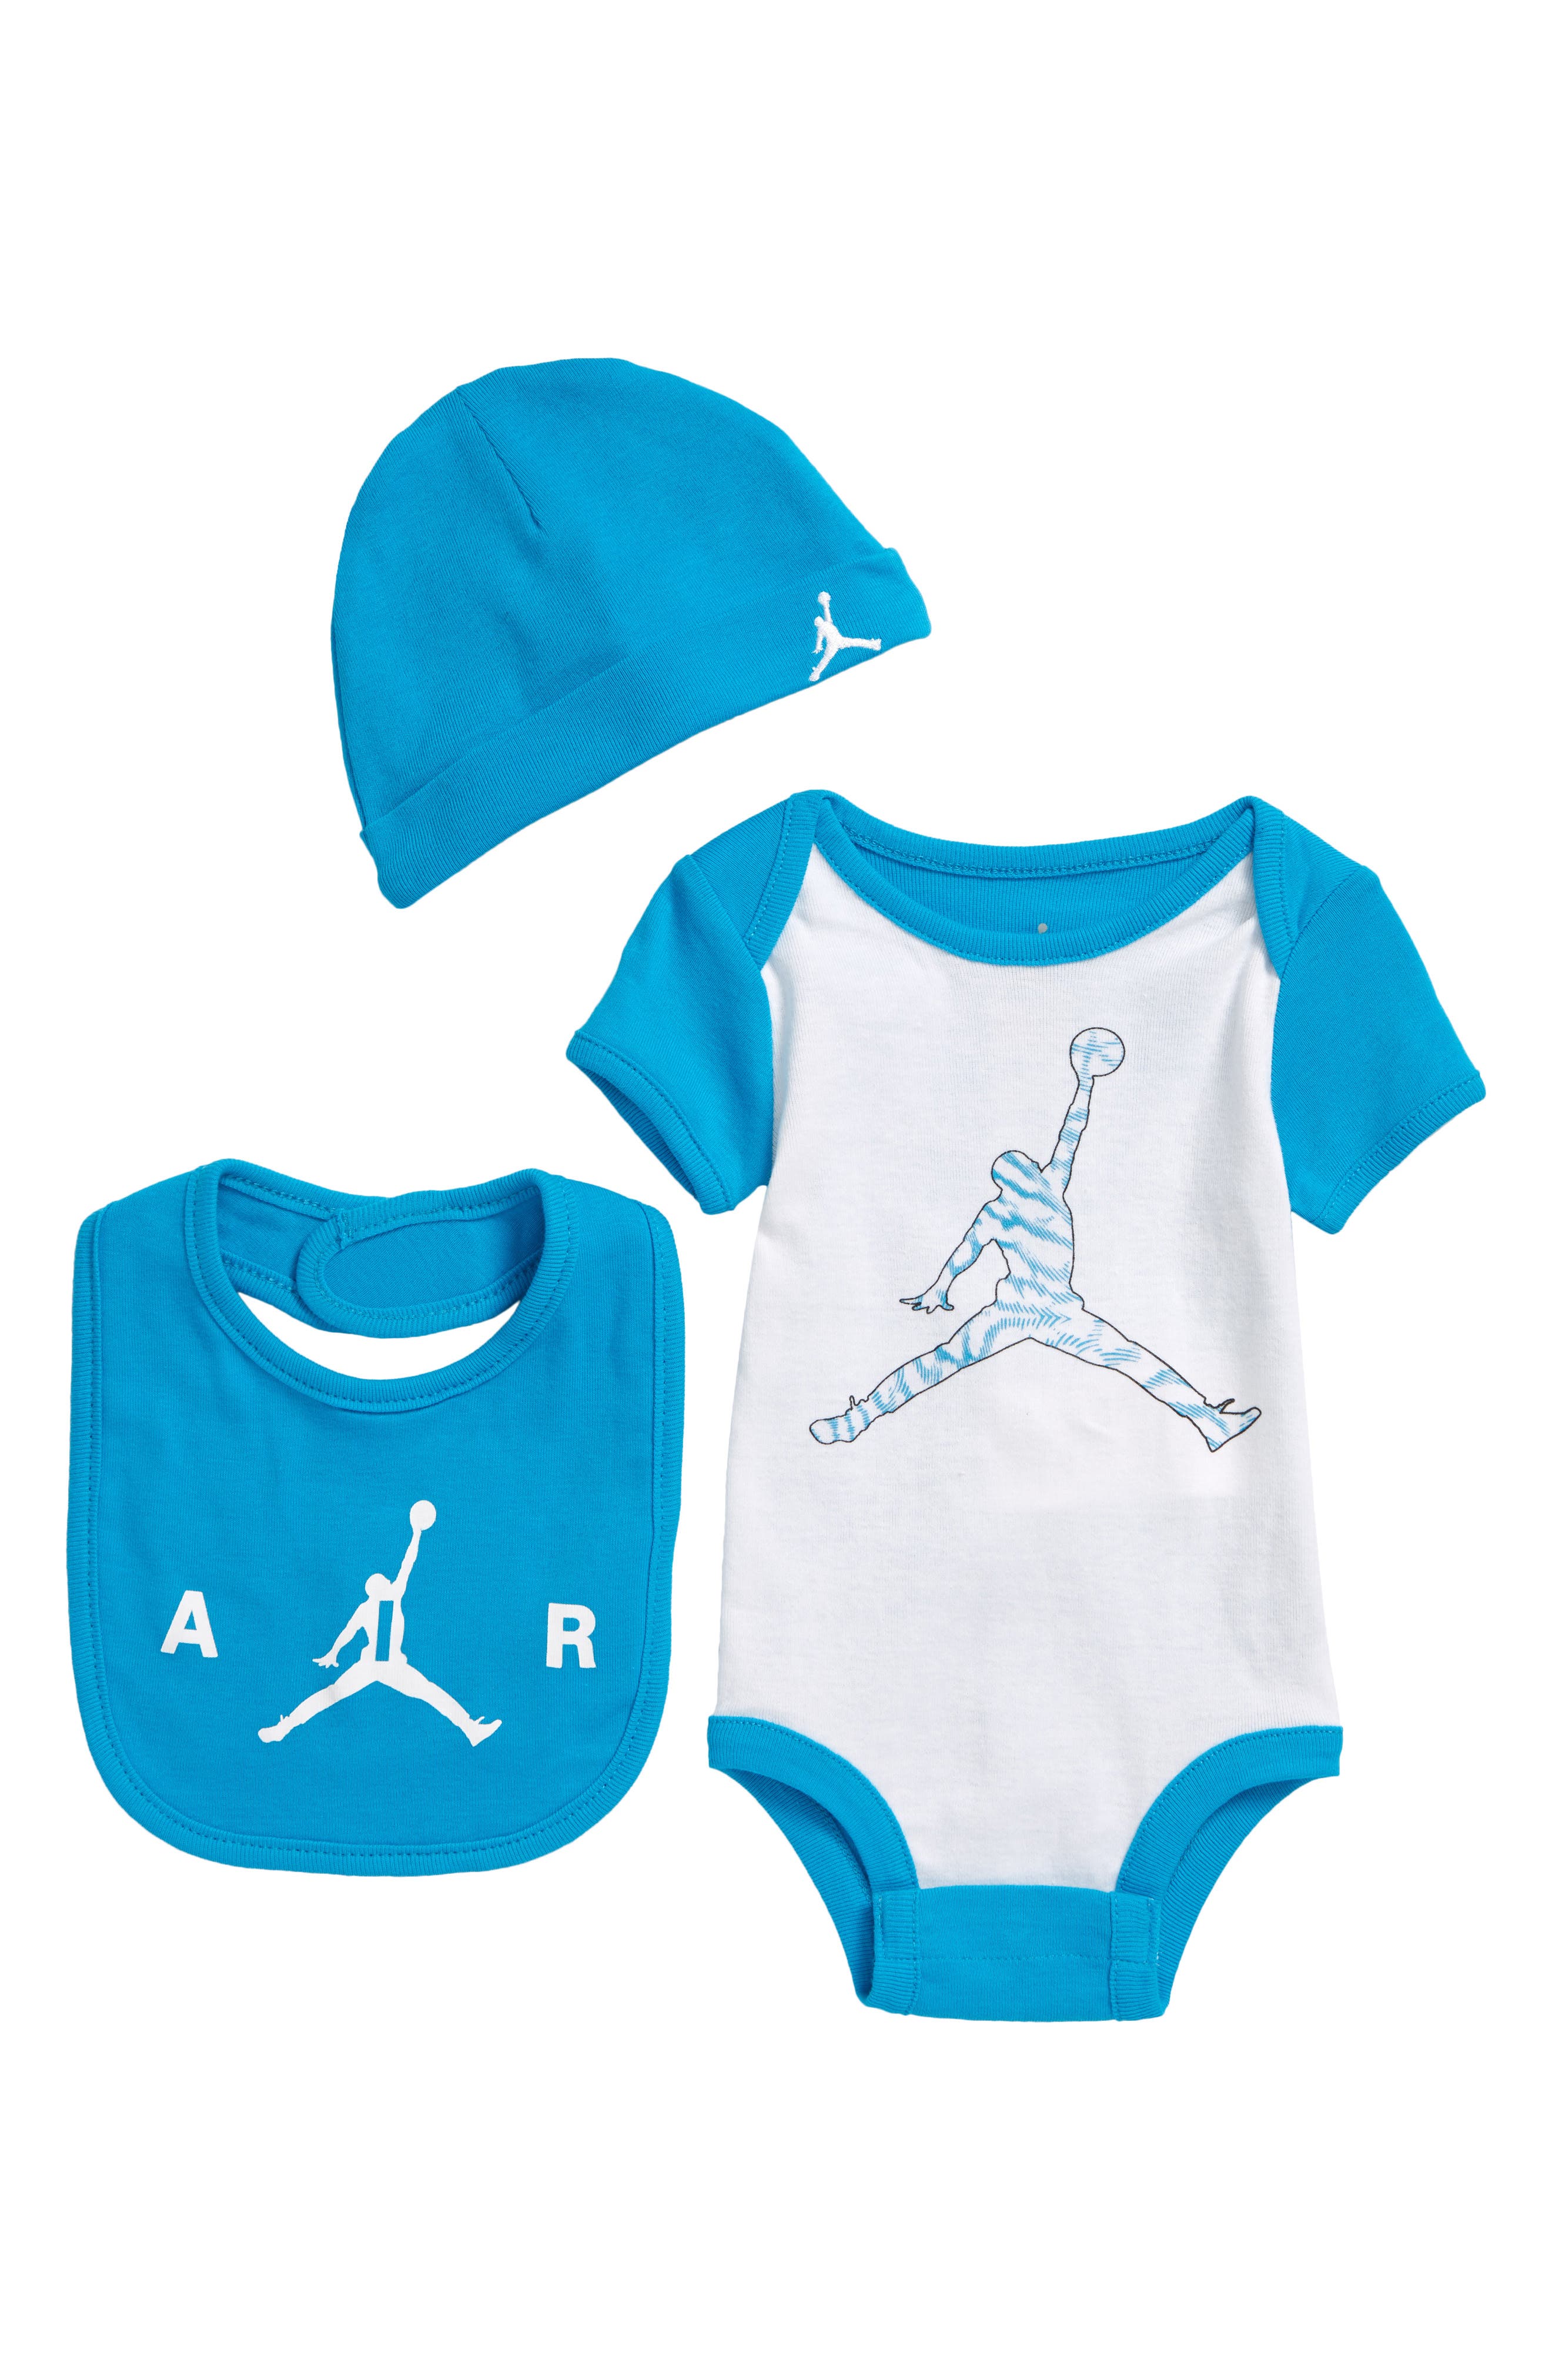 air jordan infant clothes